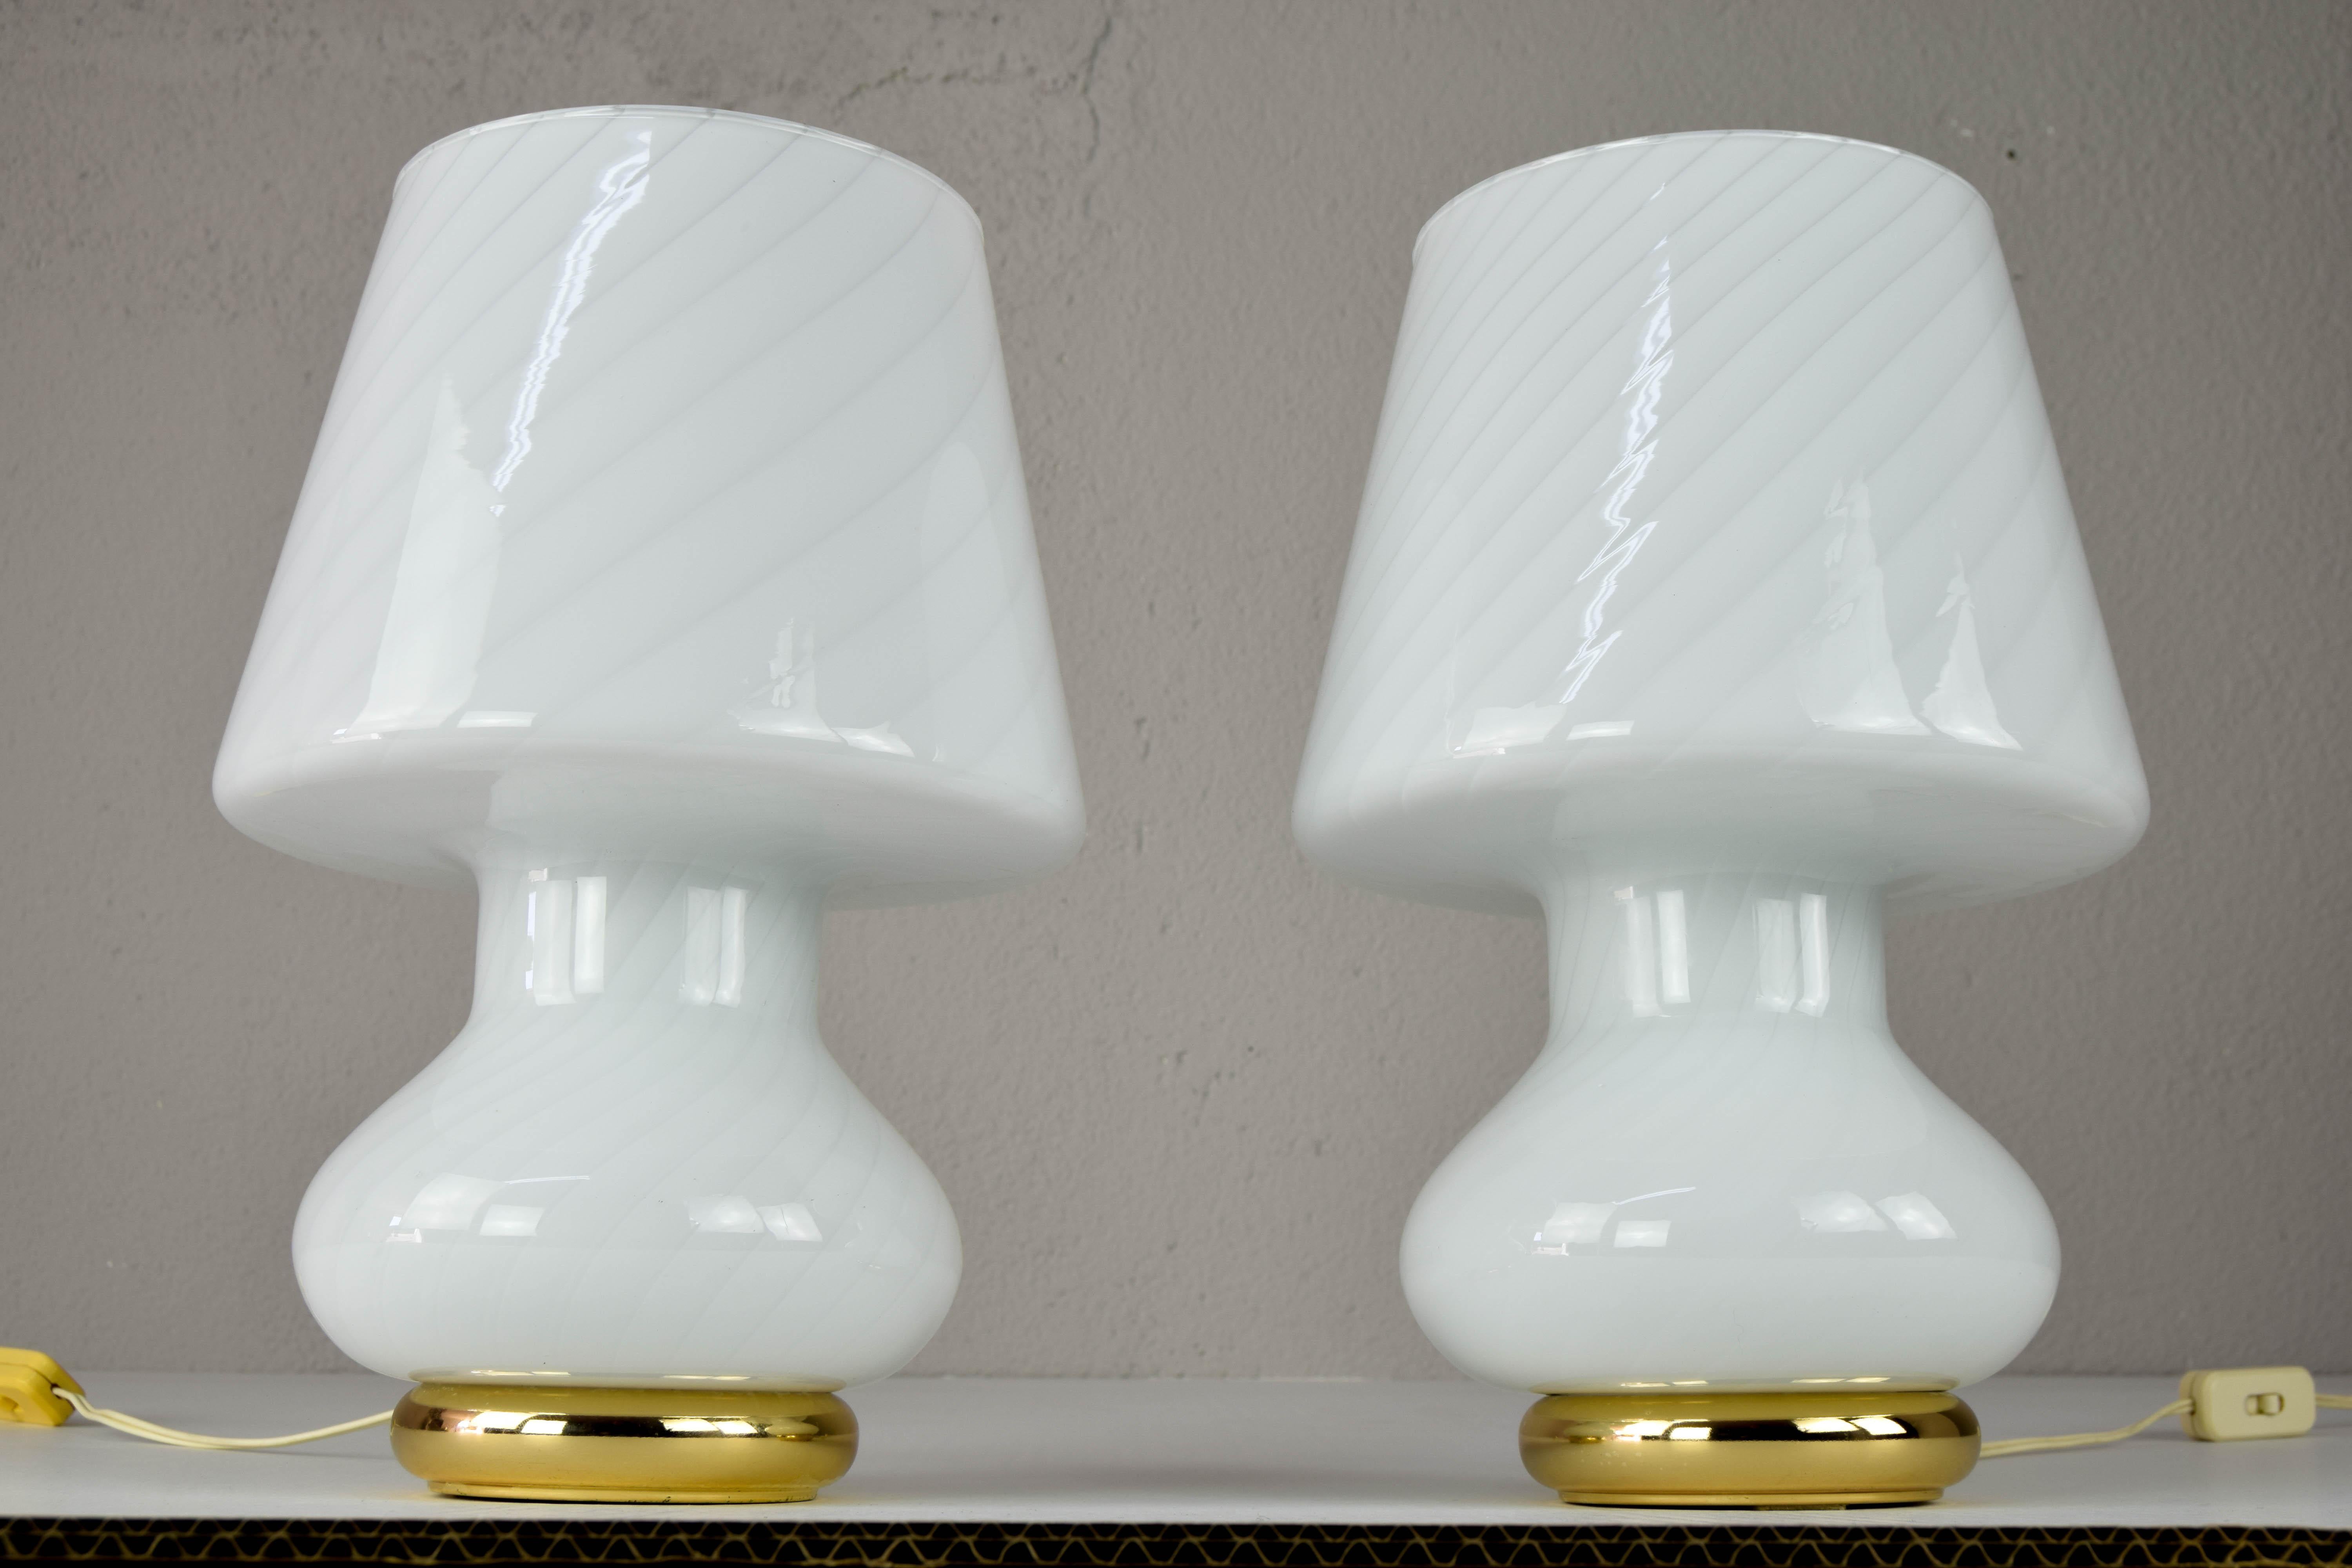 Satz von zwei Tischlampen aus mundgeblasenem Muranoglas für Vetri, Italien, in den 1960er Jahren.
Dieses Paar geriffelter weißer Pilzlampen in Form eines Wirbels und mit einem Messingsockel ist in einem ausgezeichneten Erhaltungszustand, ohne